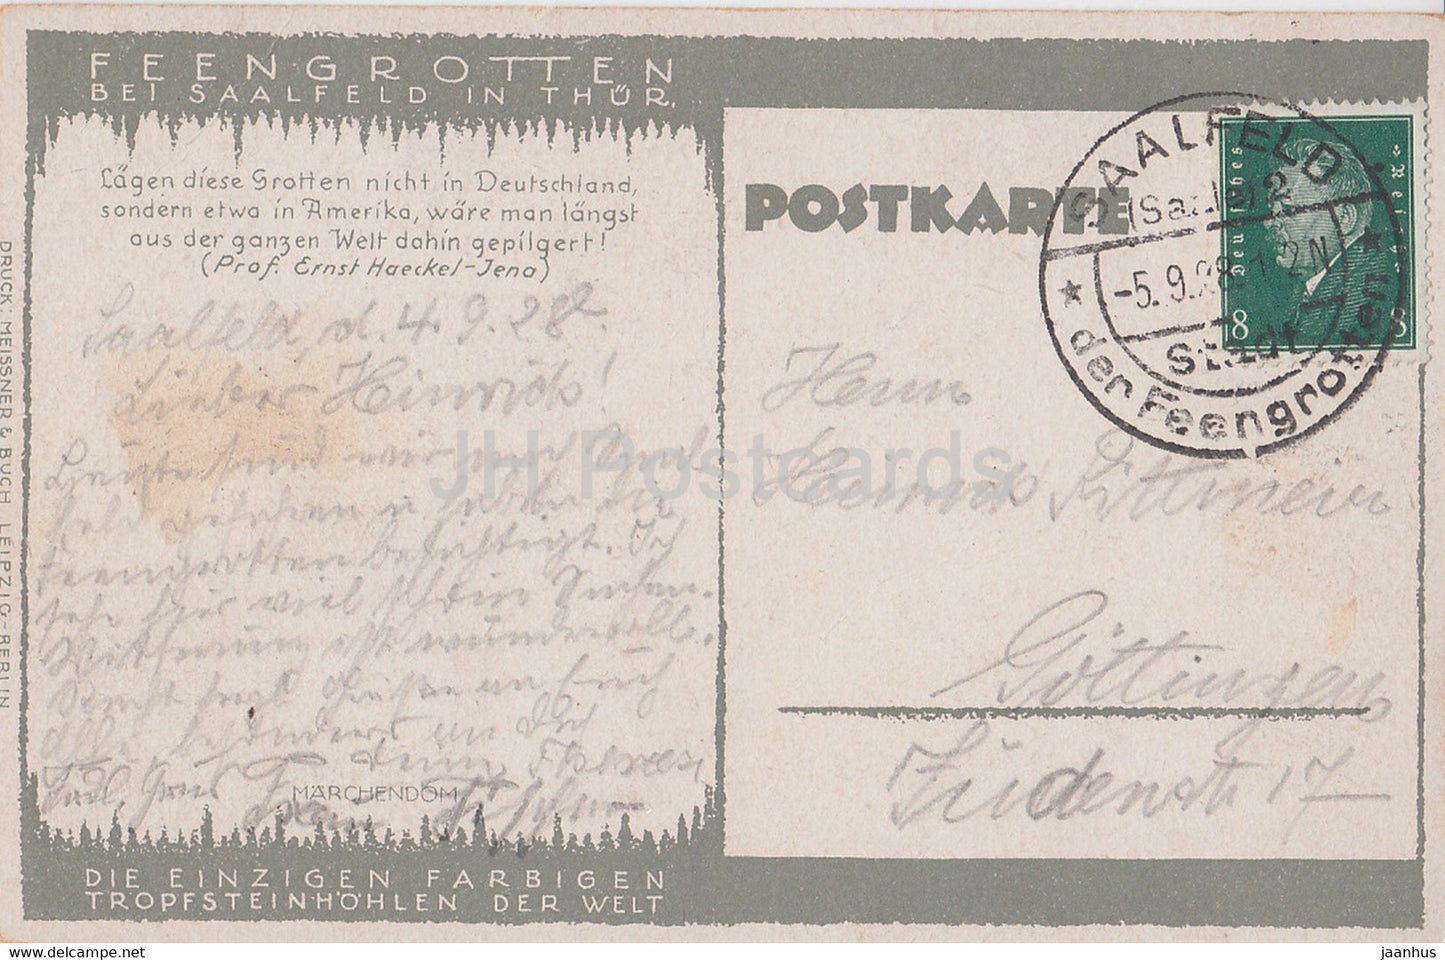 Feengrotten bei Saalfeld à Thur - Marchendom - grotte - carte postale ancienne - 1928 - Allemagne - utilisé